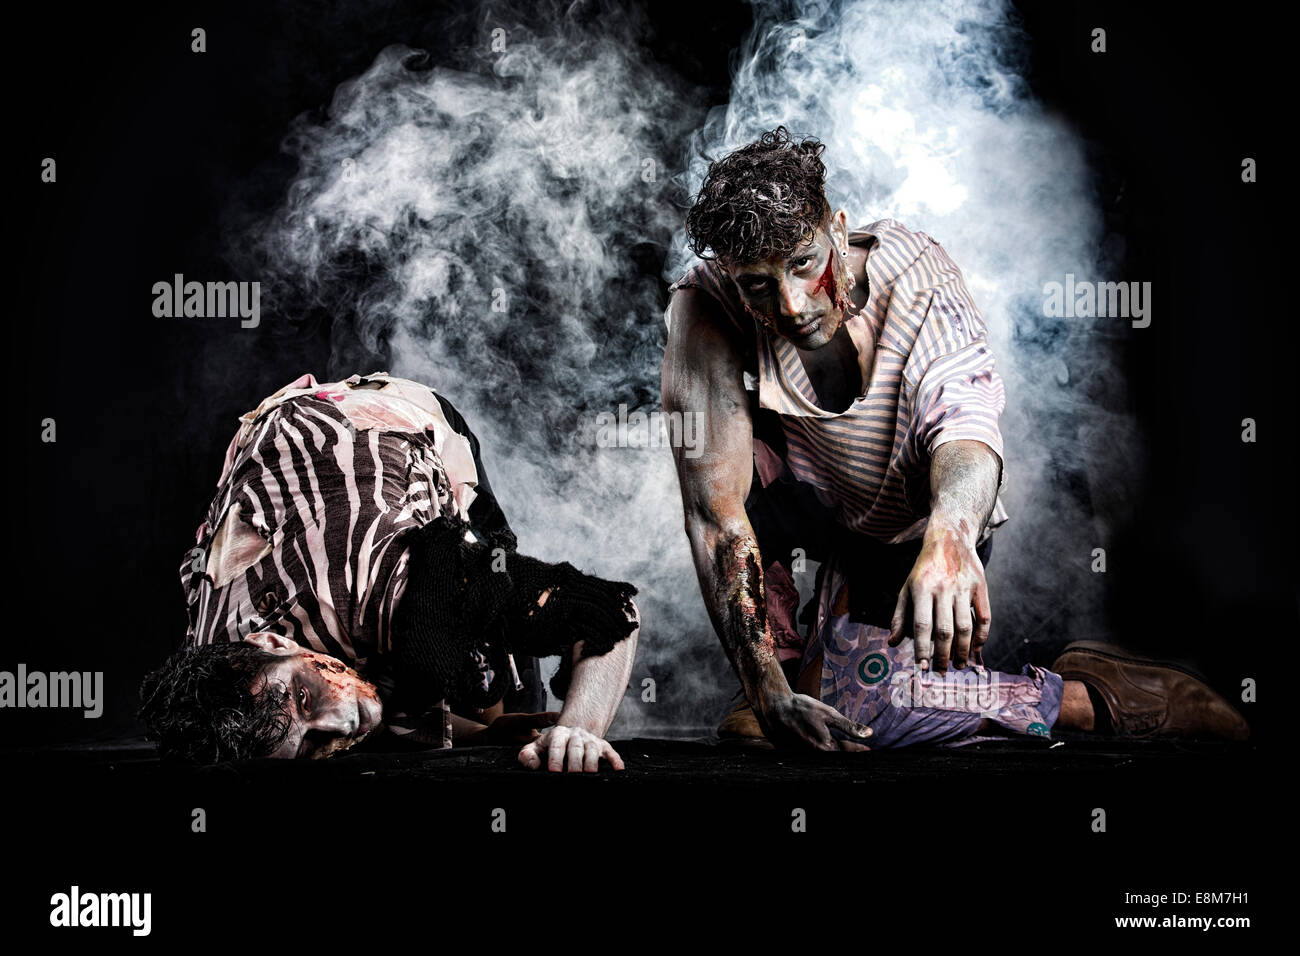 Deux hommes zombies ramper sur les genoux, sur fond noir fumé, looking at camera. Thème de l'Halloween Banque D'Images